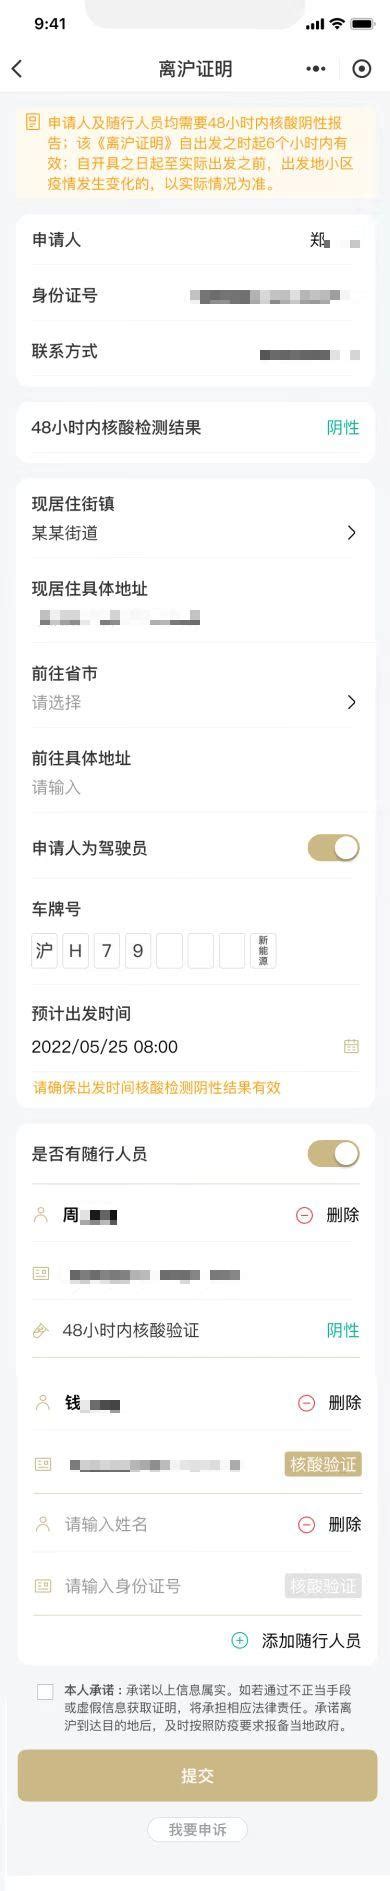 上海发布离沪提示_中安新闻_中安新闻客户端_中安在线